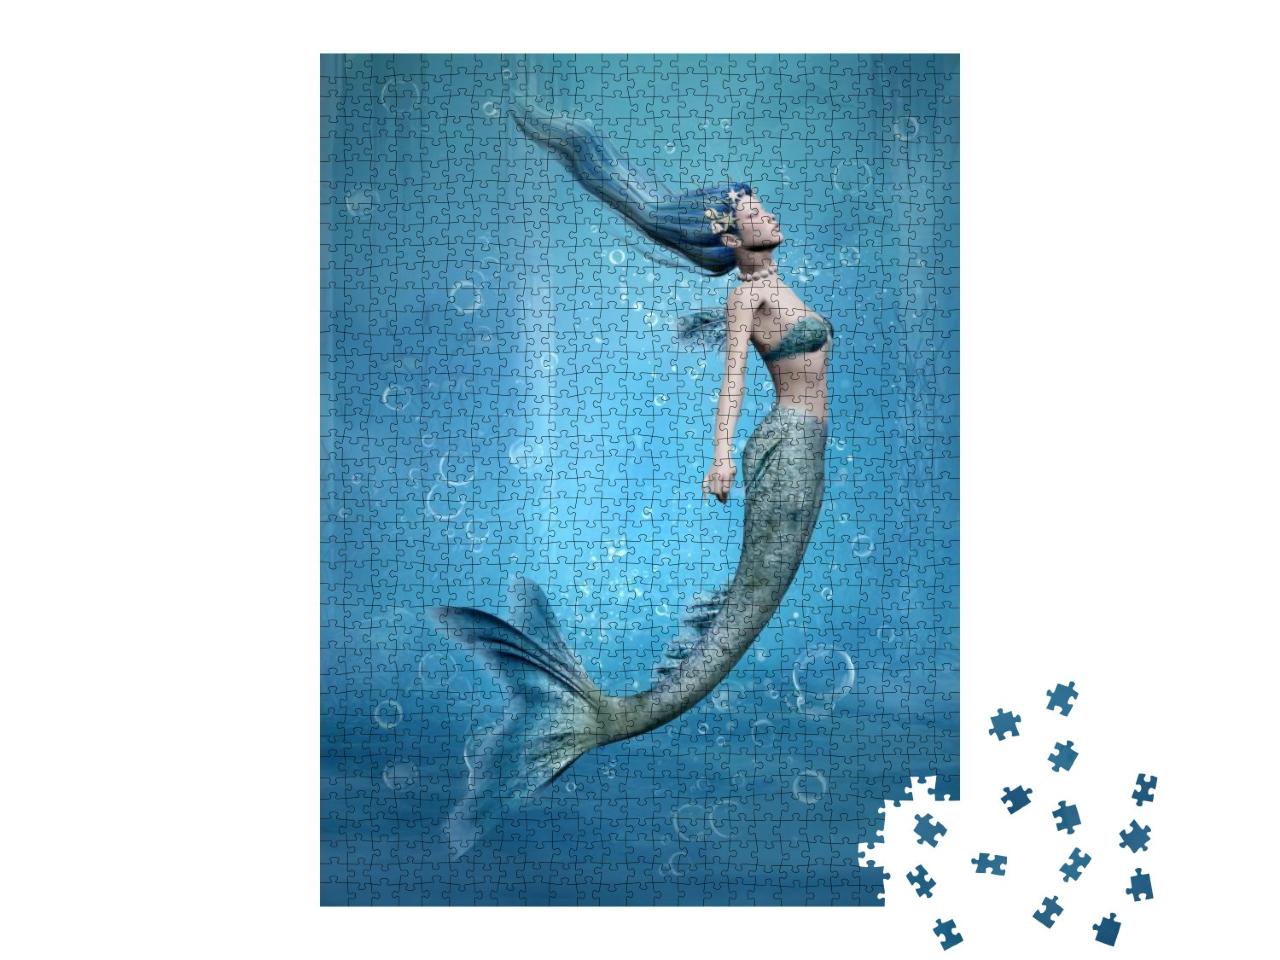 Puzzle 1000 Teile „Im Wasser schwebende Meerjungfrau“